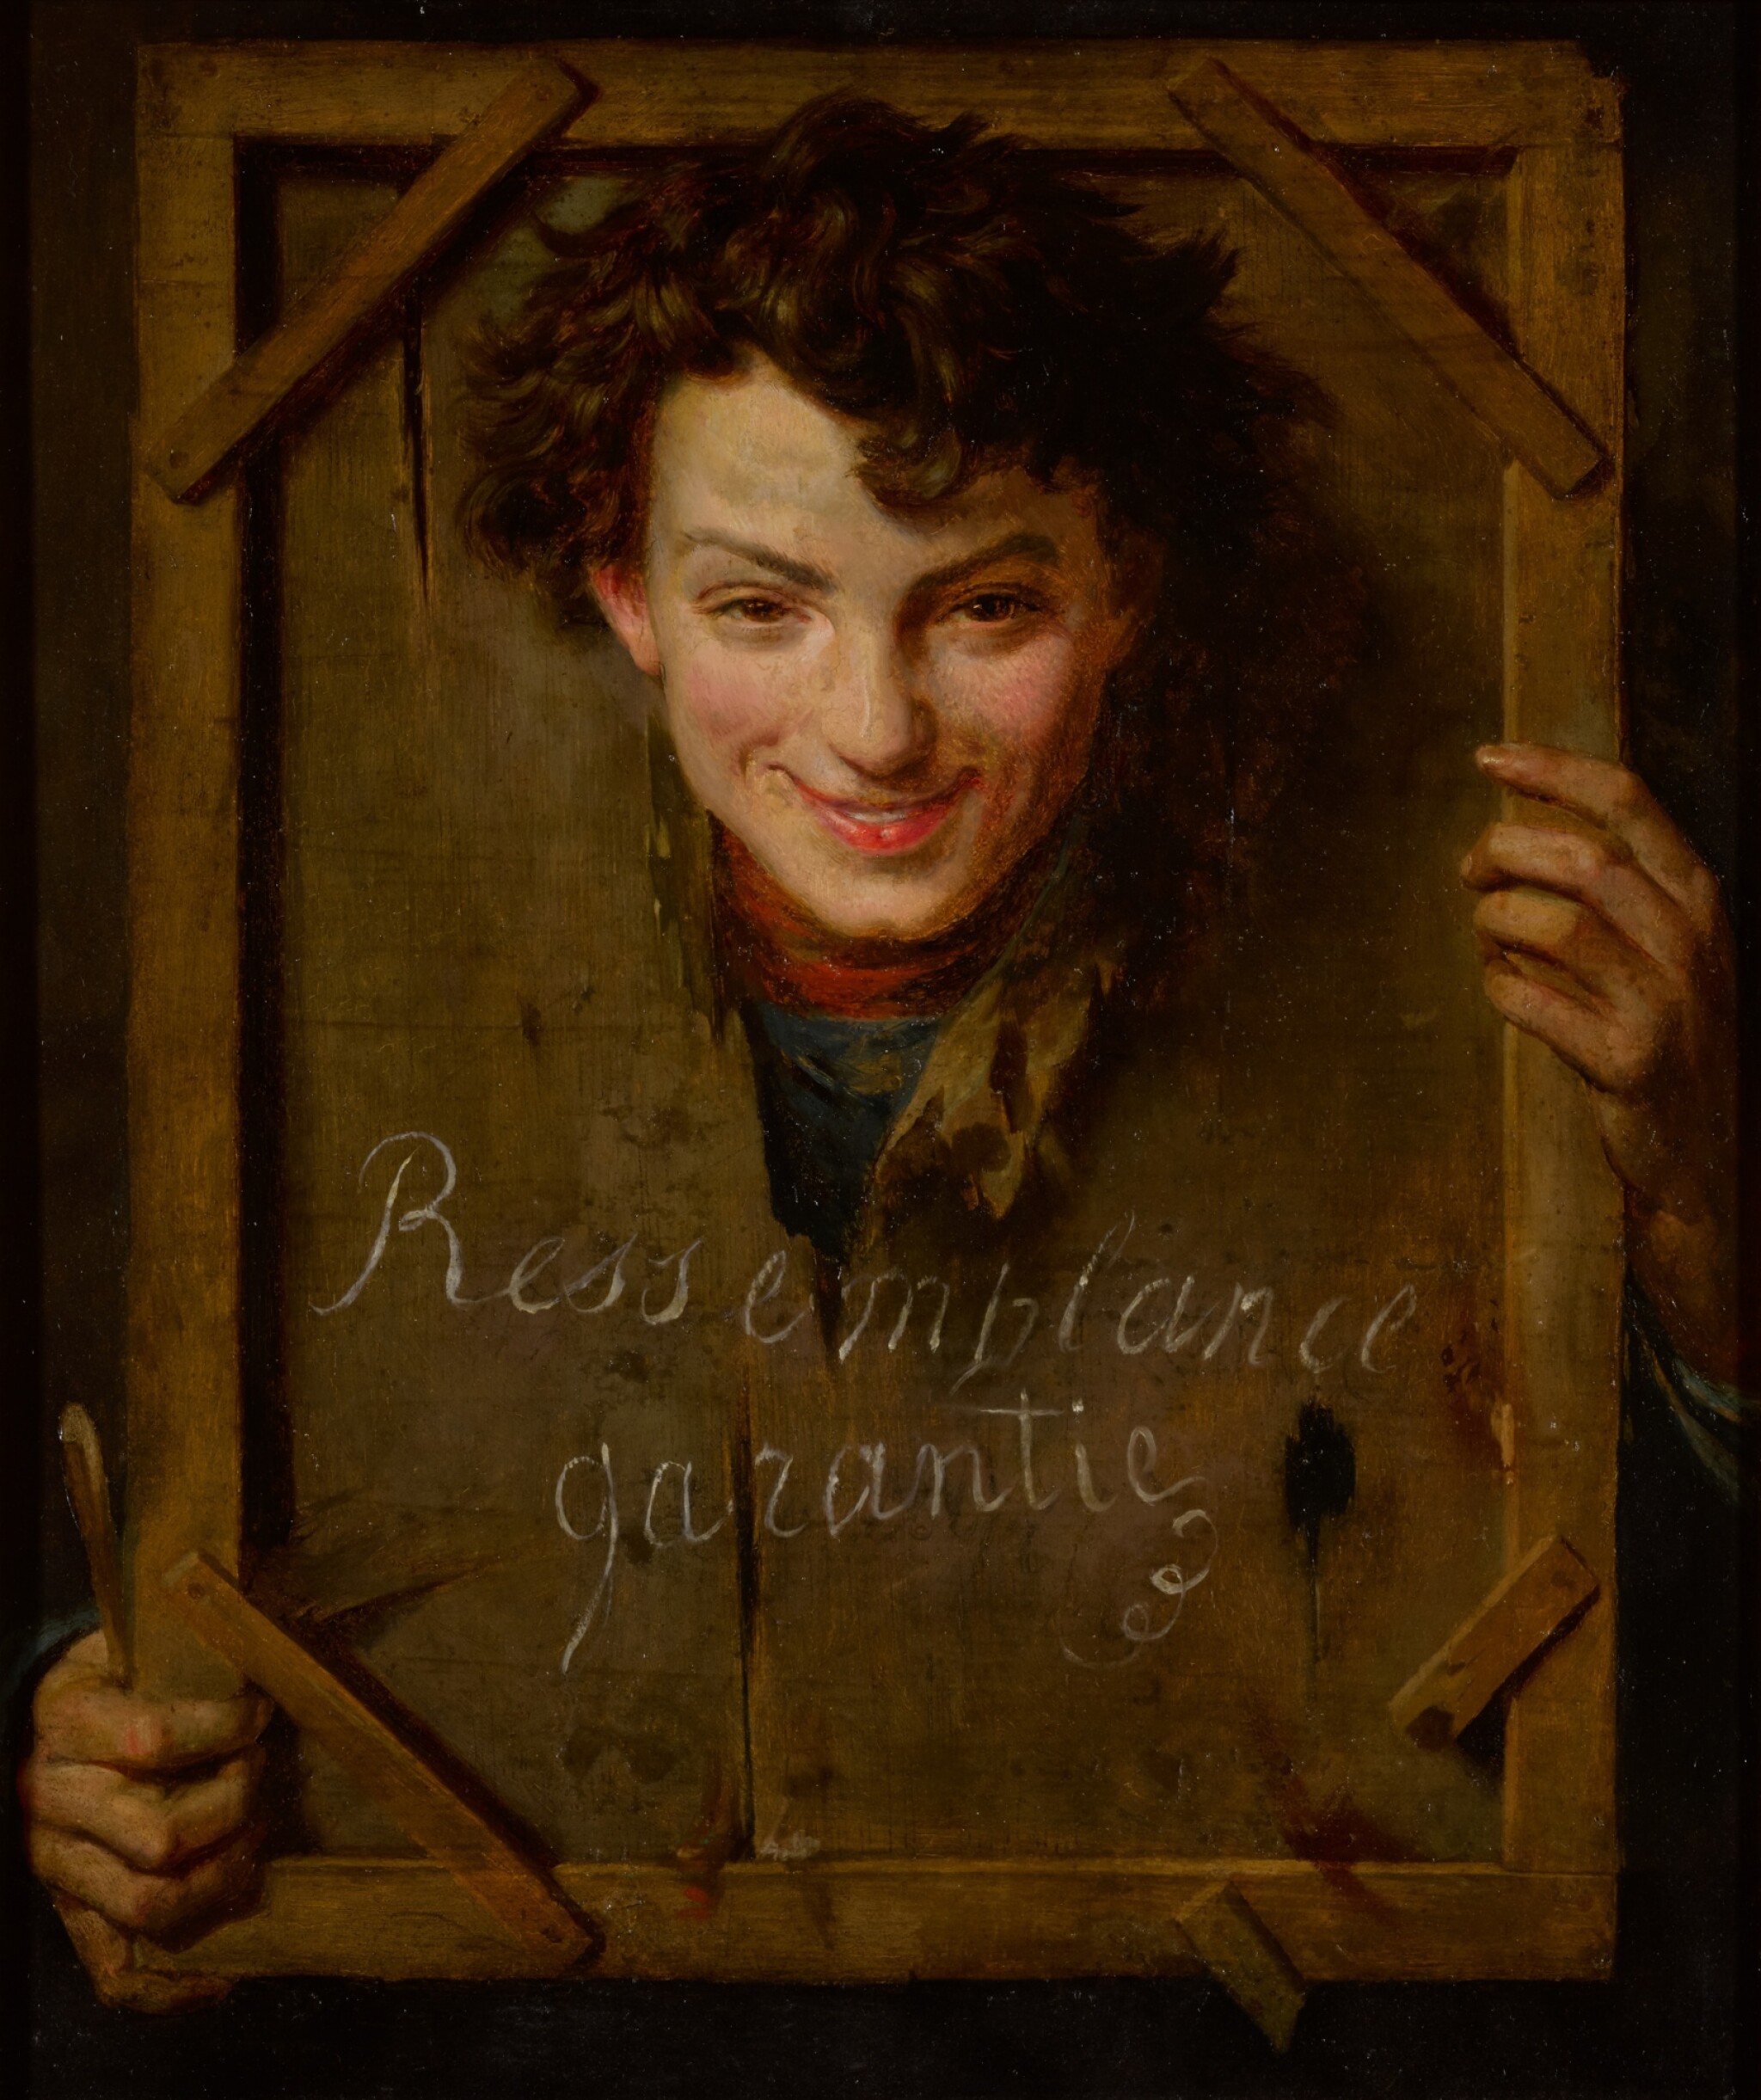 Gelijkenis gegarandeerd by Onbekende Artiest - 19e eeuw - 65 x 54,9 cm 